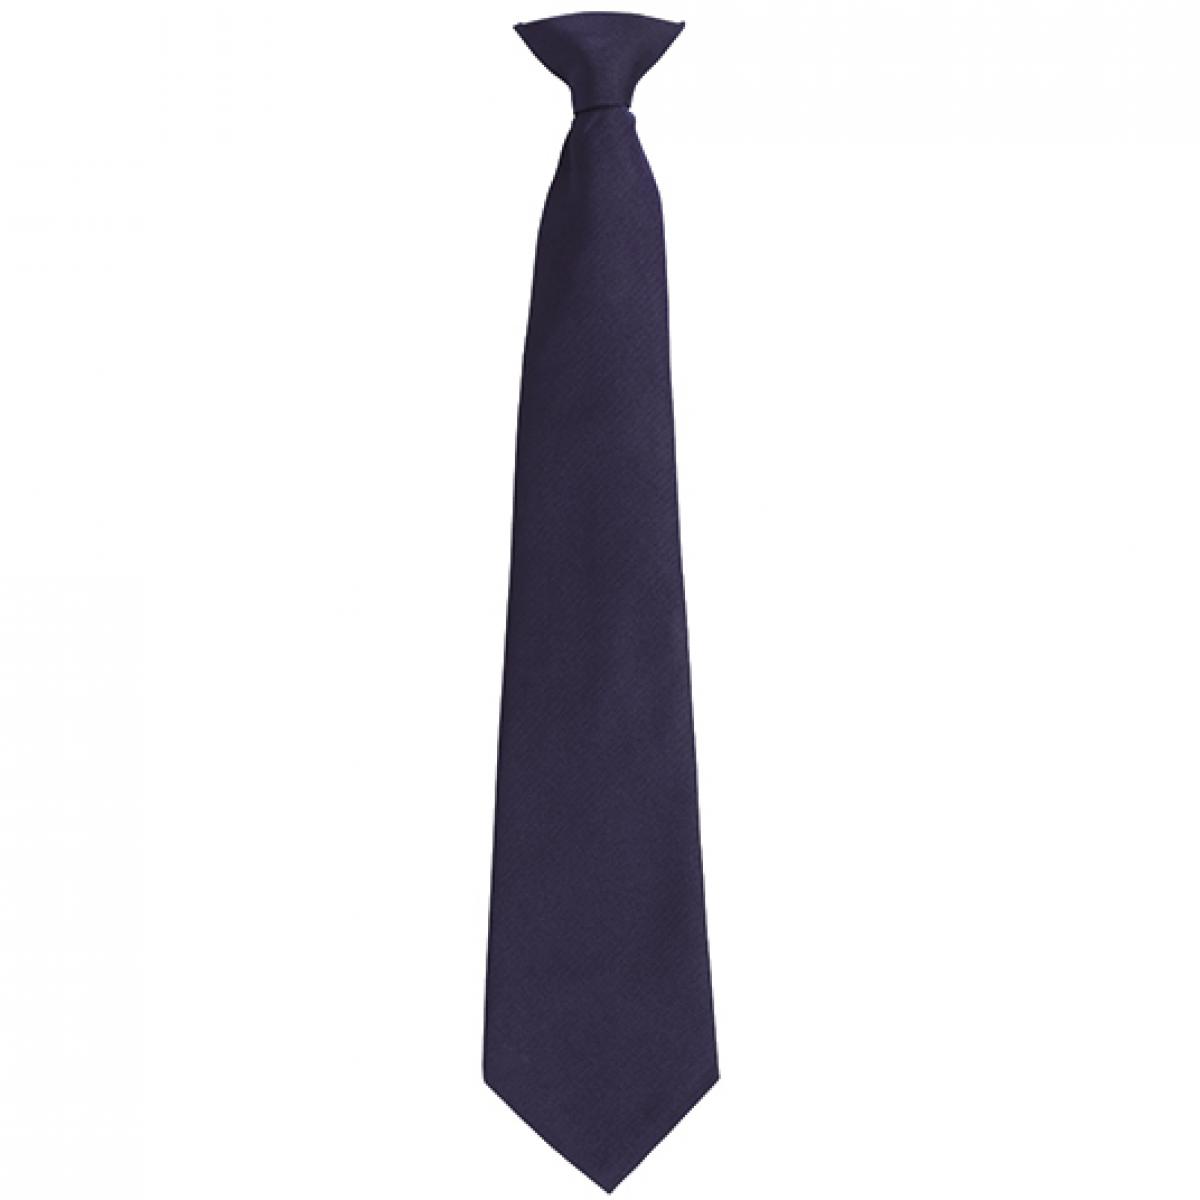 Hersteller: Premier Workwear Herstellernummer: PR785 Artikelbezeichnung: ´Colours´ Fashion Clip Tie Farbe: Navy (ca. Pantone 533C)